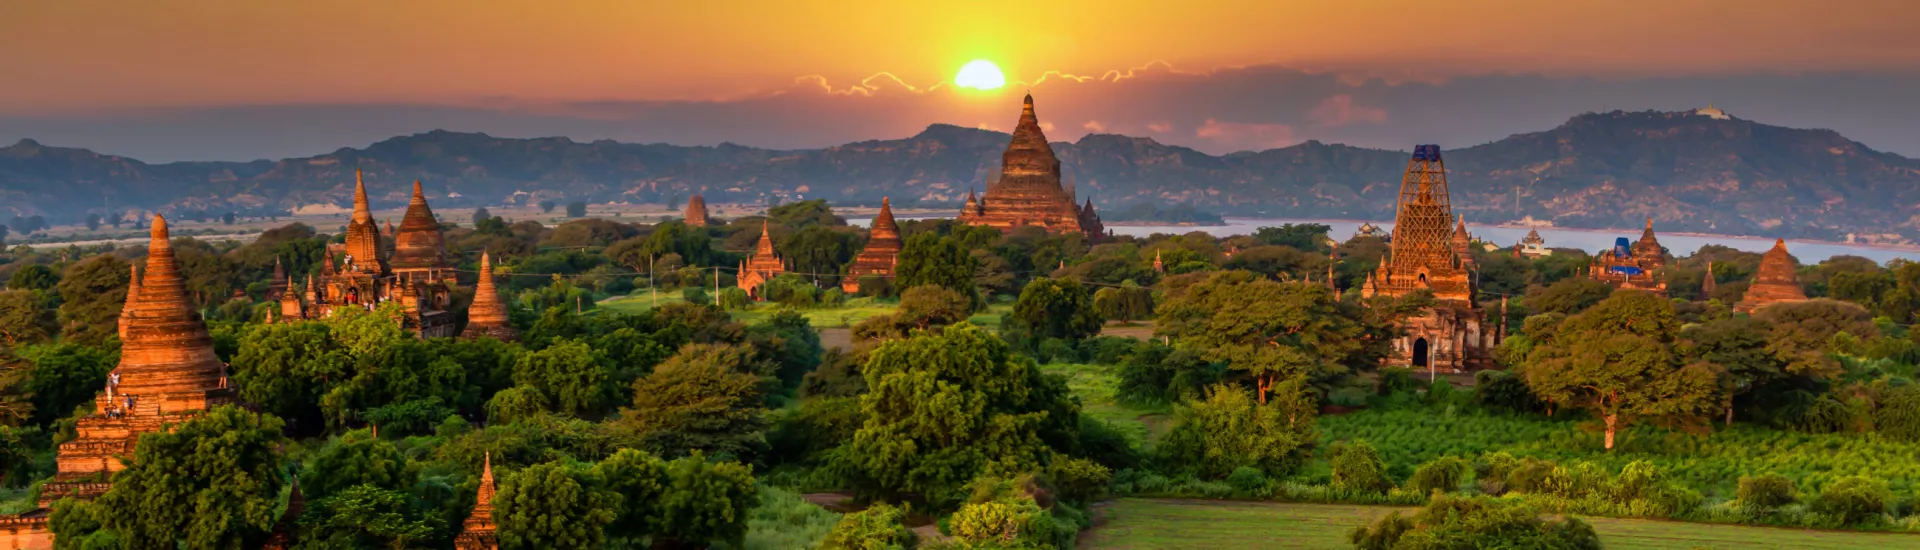 Die Tempel von Bagan, Myanmar